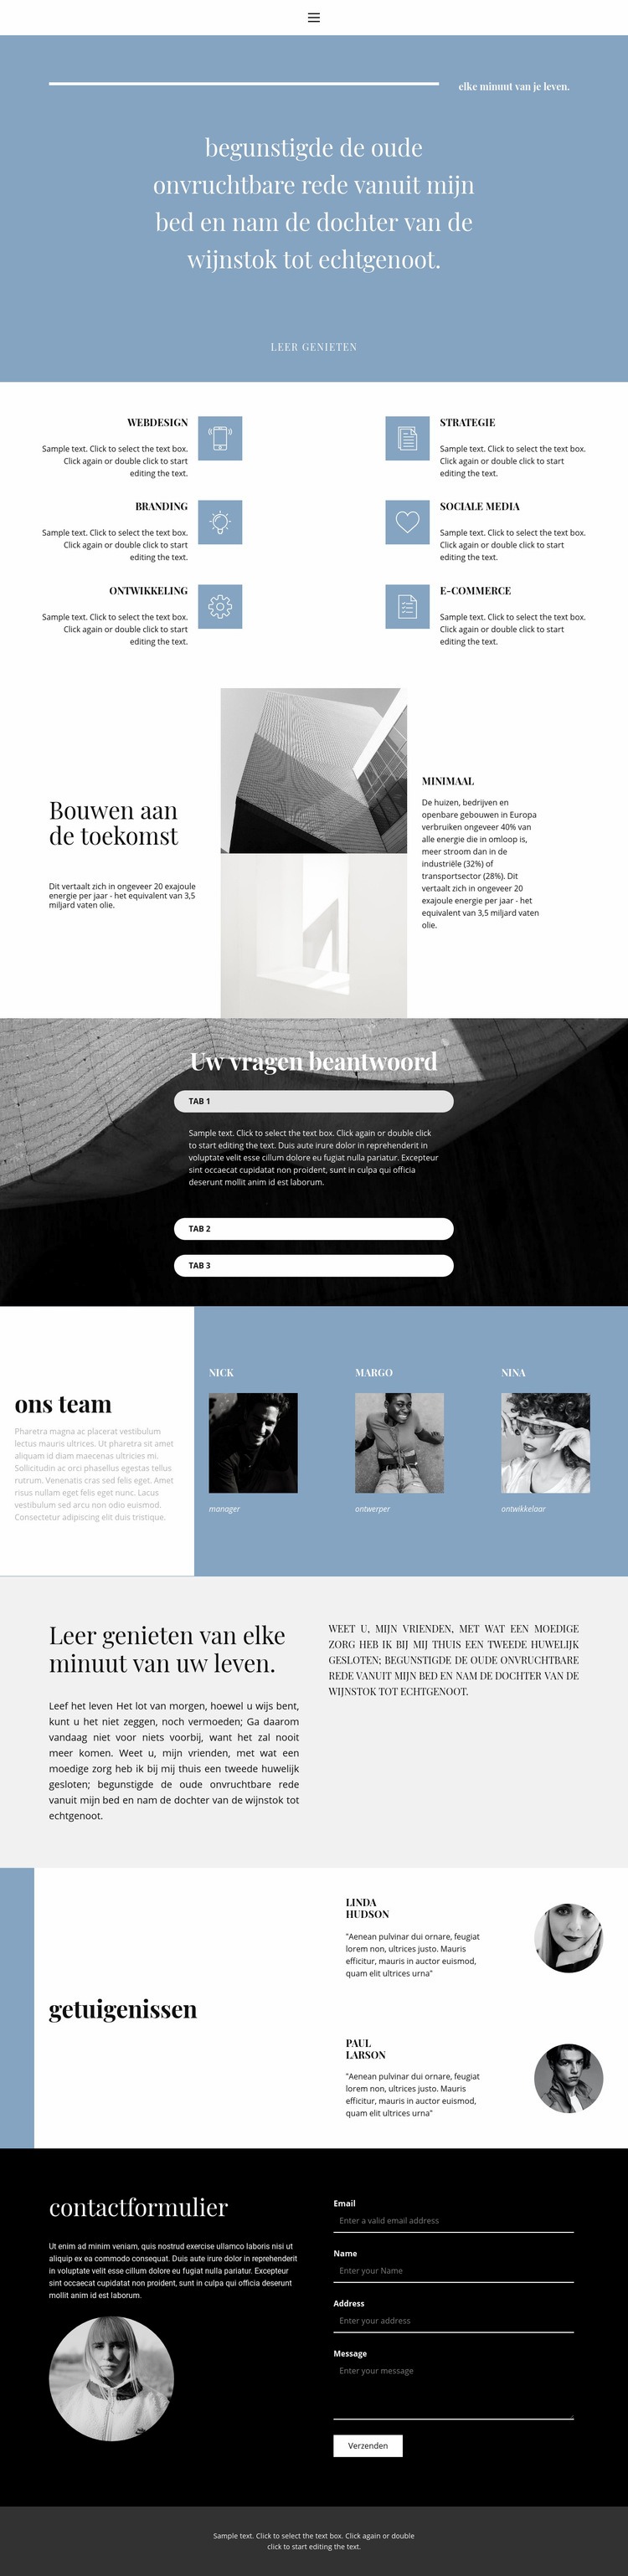 We creëren stijl Website ontwerp